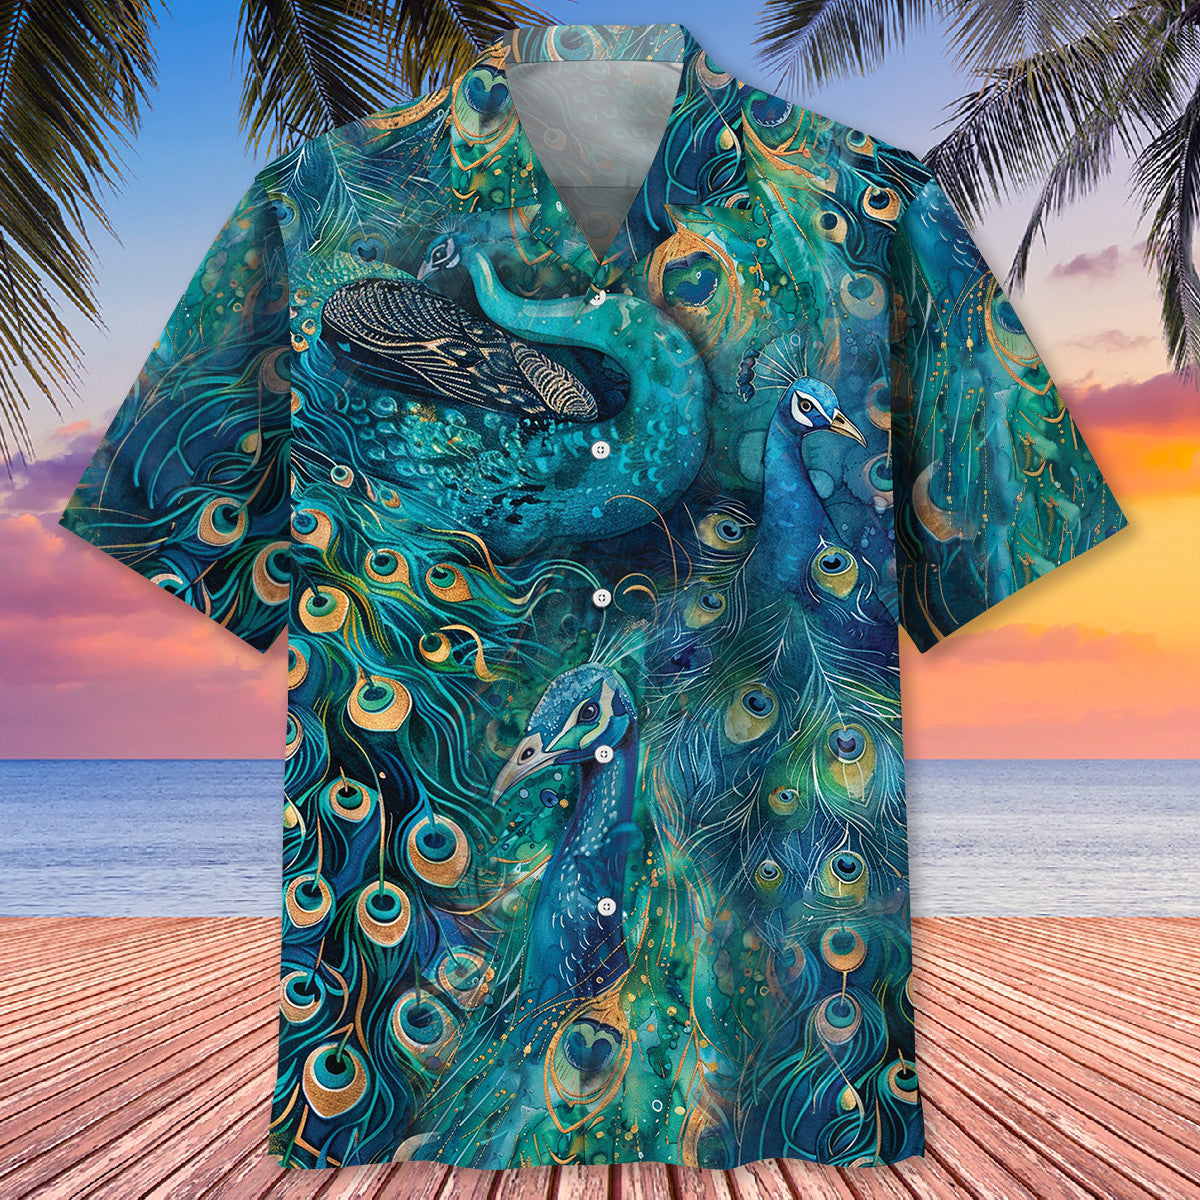 Peacock Teal Hawaiian Shirt